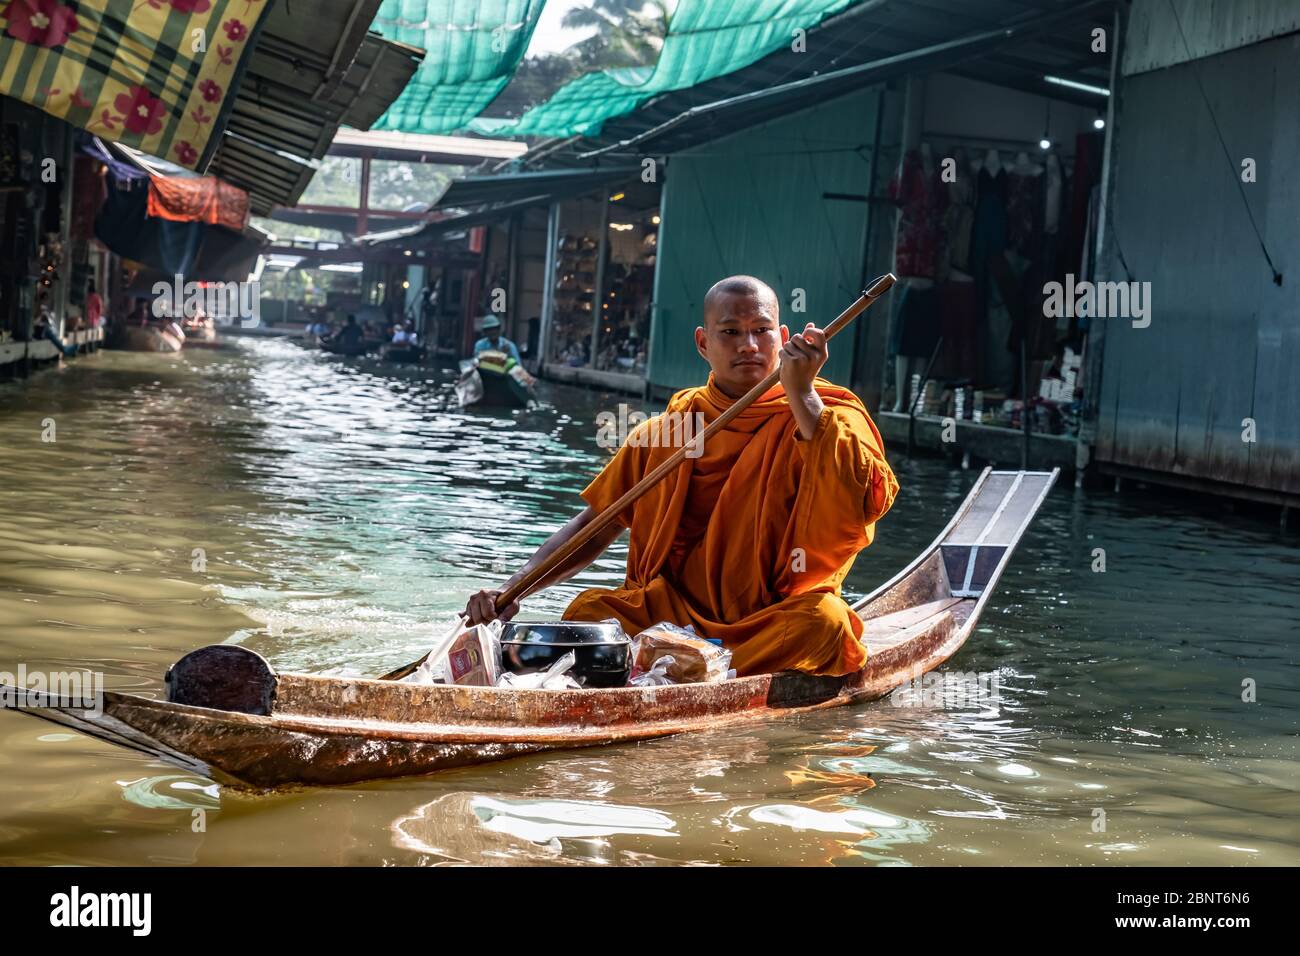 Ratchaburi, Damnoen Saduak / Thaïlande - 11 février 2020 : le moine bouddhiste sculpte le bateau dans le marché flottant de Damnoen Saduak. Le marché flottant est le plus Banque D'Images